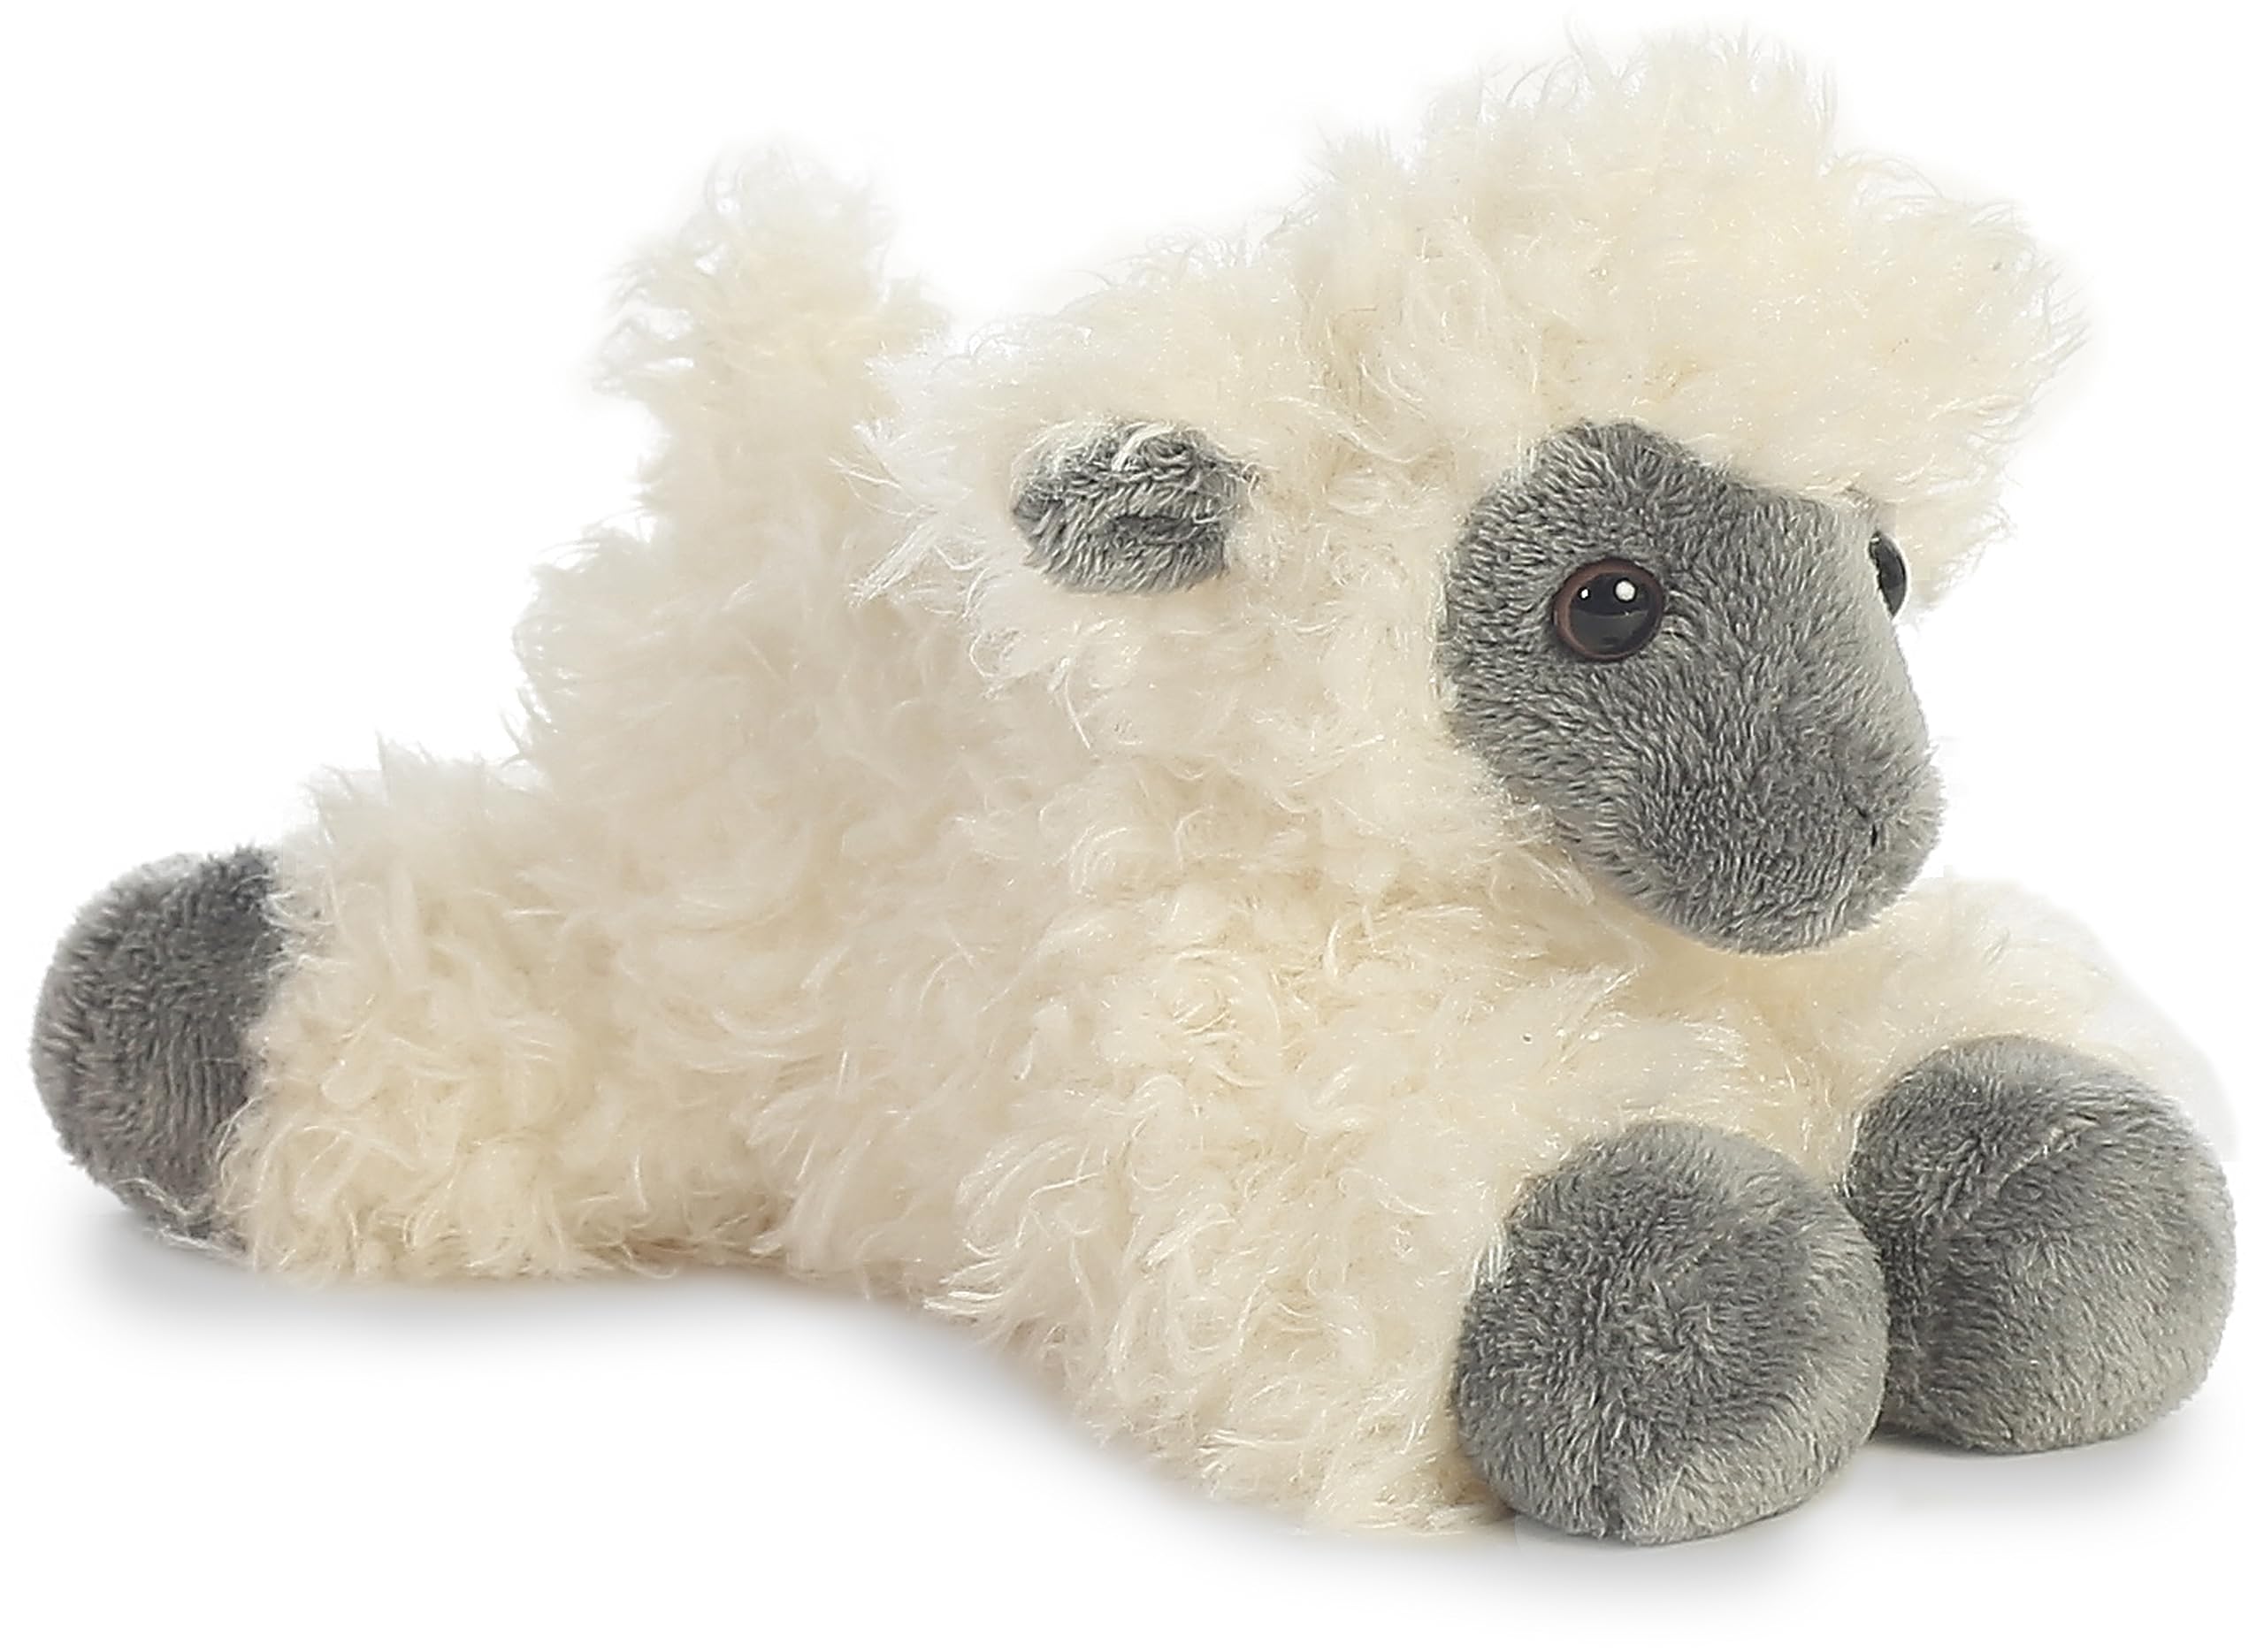 8" Aurora Adorable Mini Flopsie Black Face Sheep Stuffed Animal (White) $3.76 + Free Shipping w/ Prime or on $35+